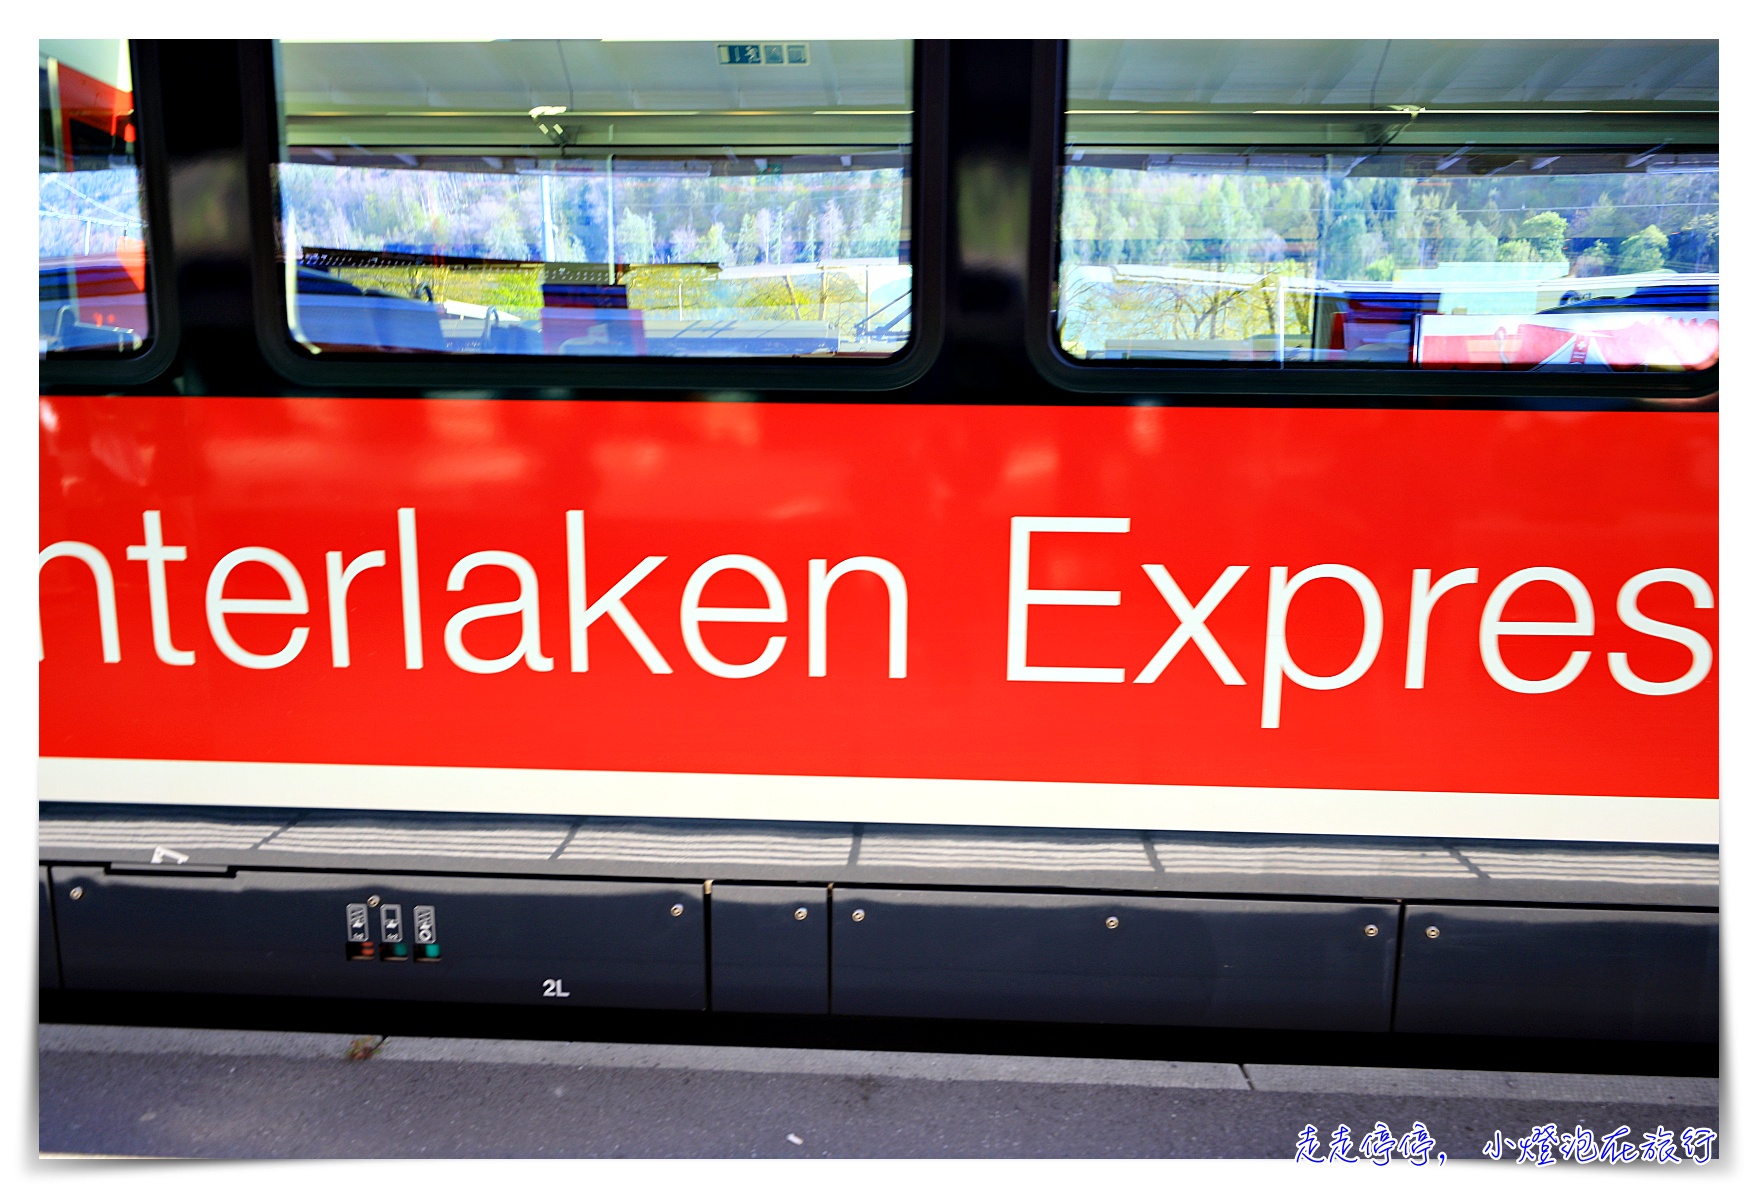 瑞士行程景點推薦｜瑞士自由行怎麼把鐵道全景四大景觀列車、瑞士名峰排進行程？瑞士12日、15日行程安排